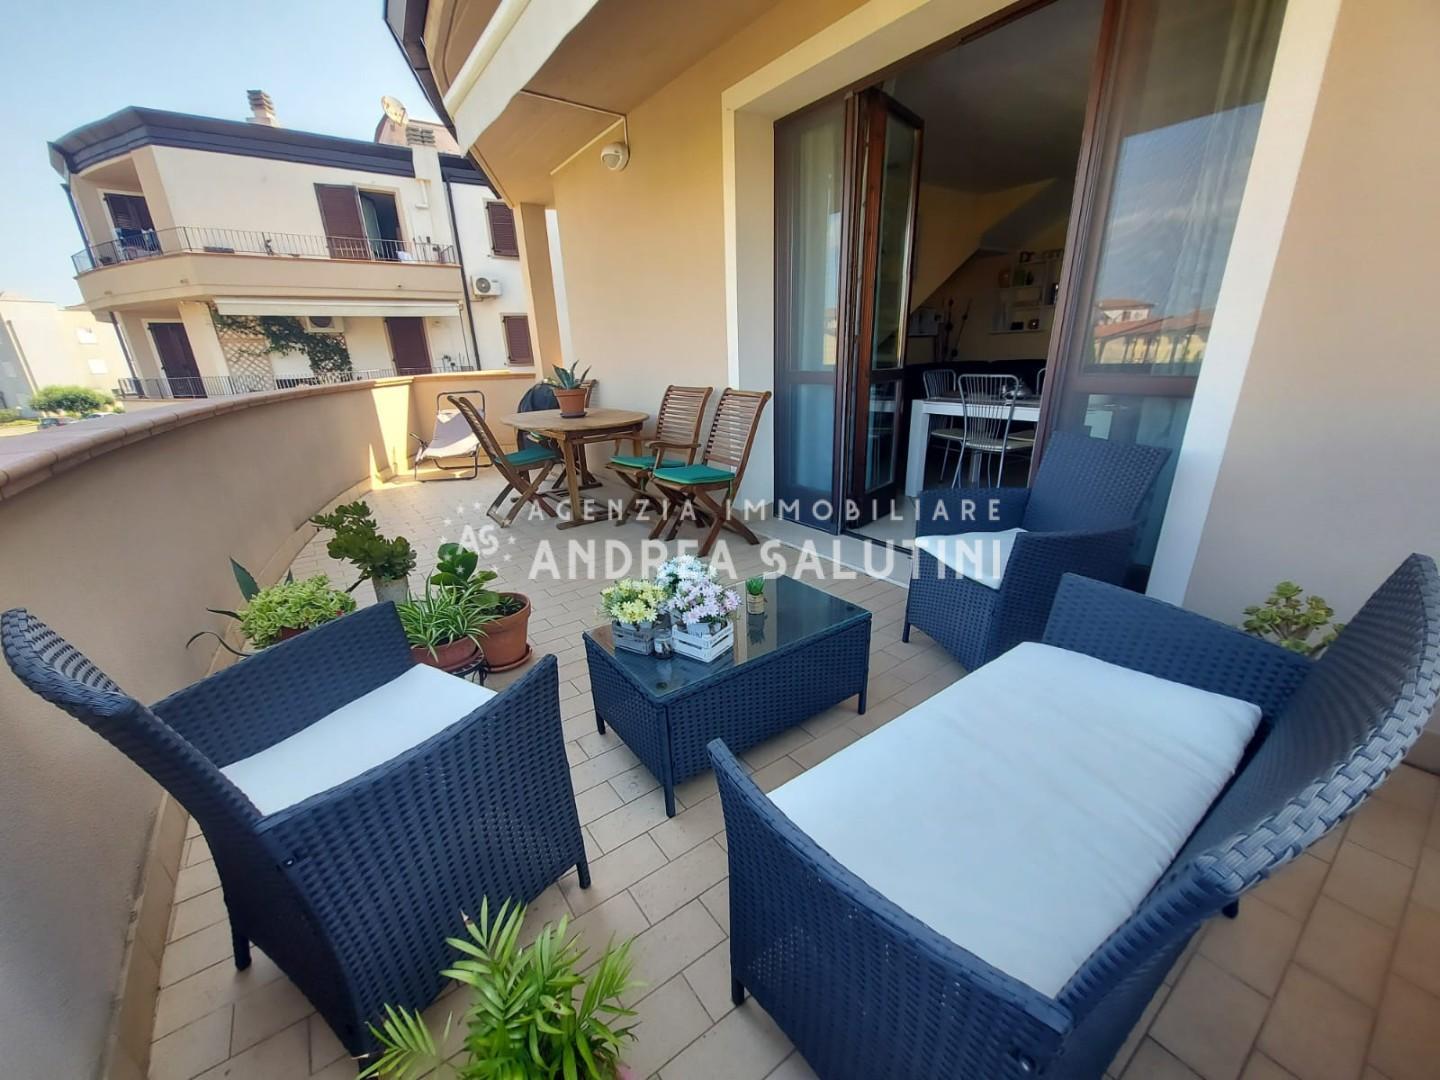 Appartamento in vendita a Castelfranco di Sotto, 5 locali, prezzo € 187.000 | PortaleAgenzieImmobiliari.it